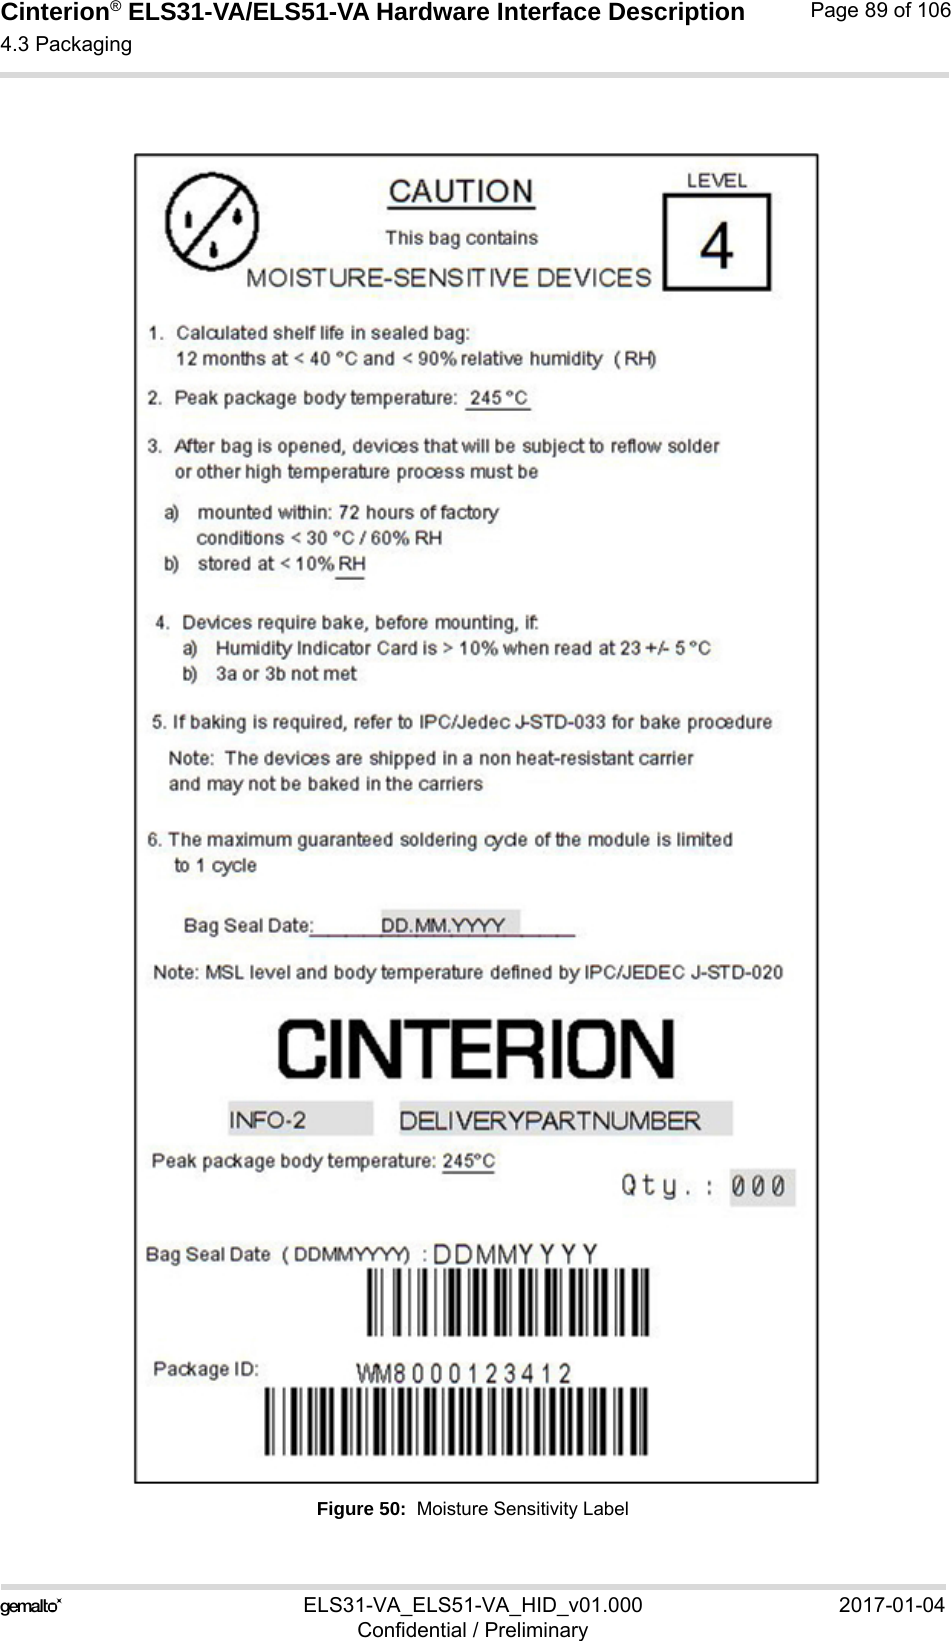 Cinterion® ELS31-VA/ELS51-VA Hardware Interface Description4.3 Packaging92ELS31-VA_ELS51-VA_HID_v01.000 2017-01-04Confidential / PreliminaryPage 89 of 106Figure 50:  Moisture Sensitivity Label